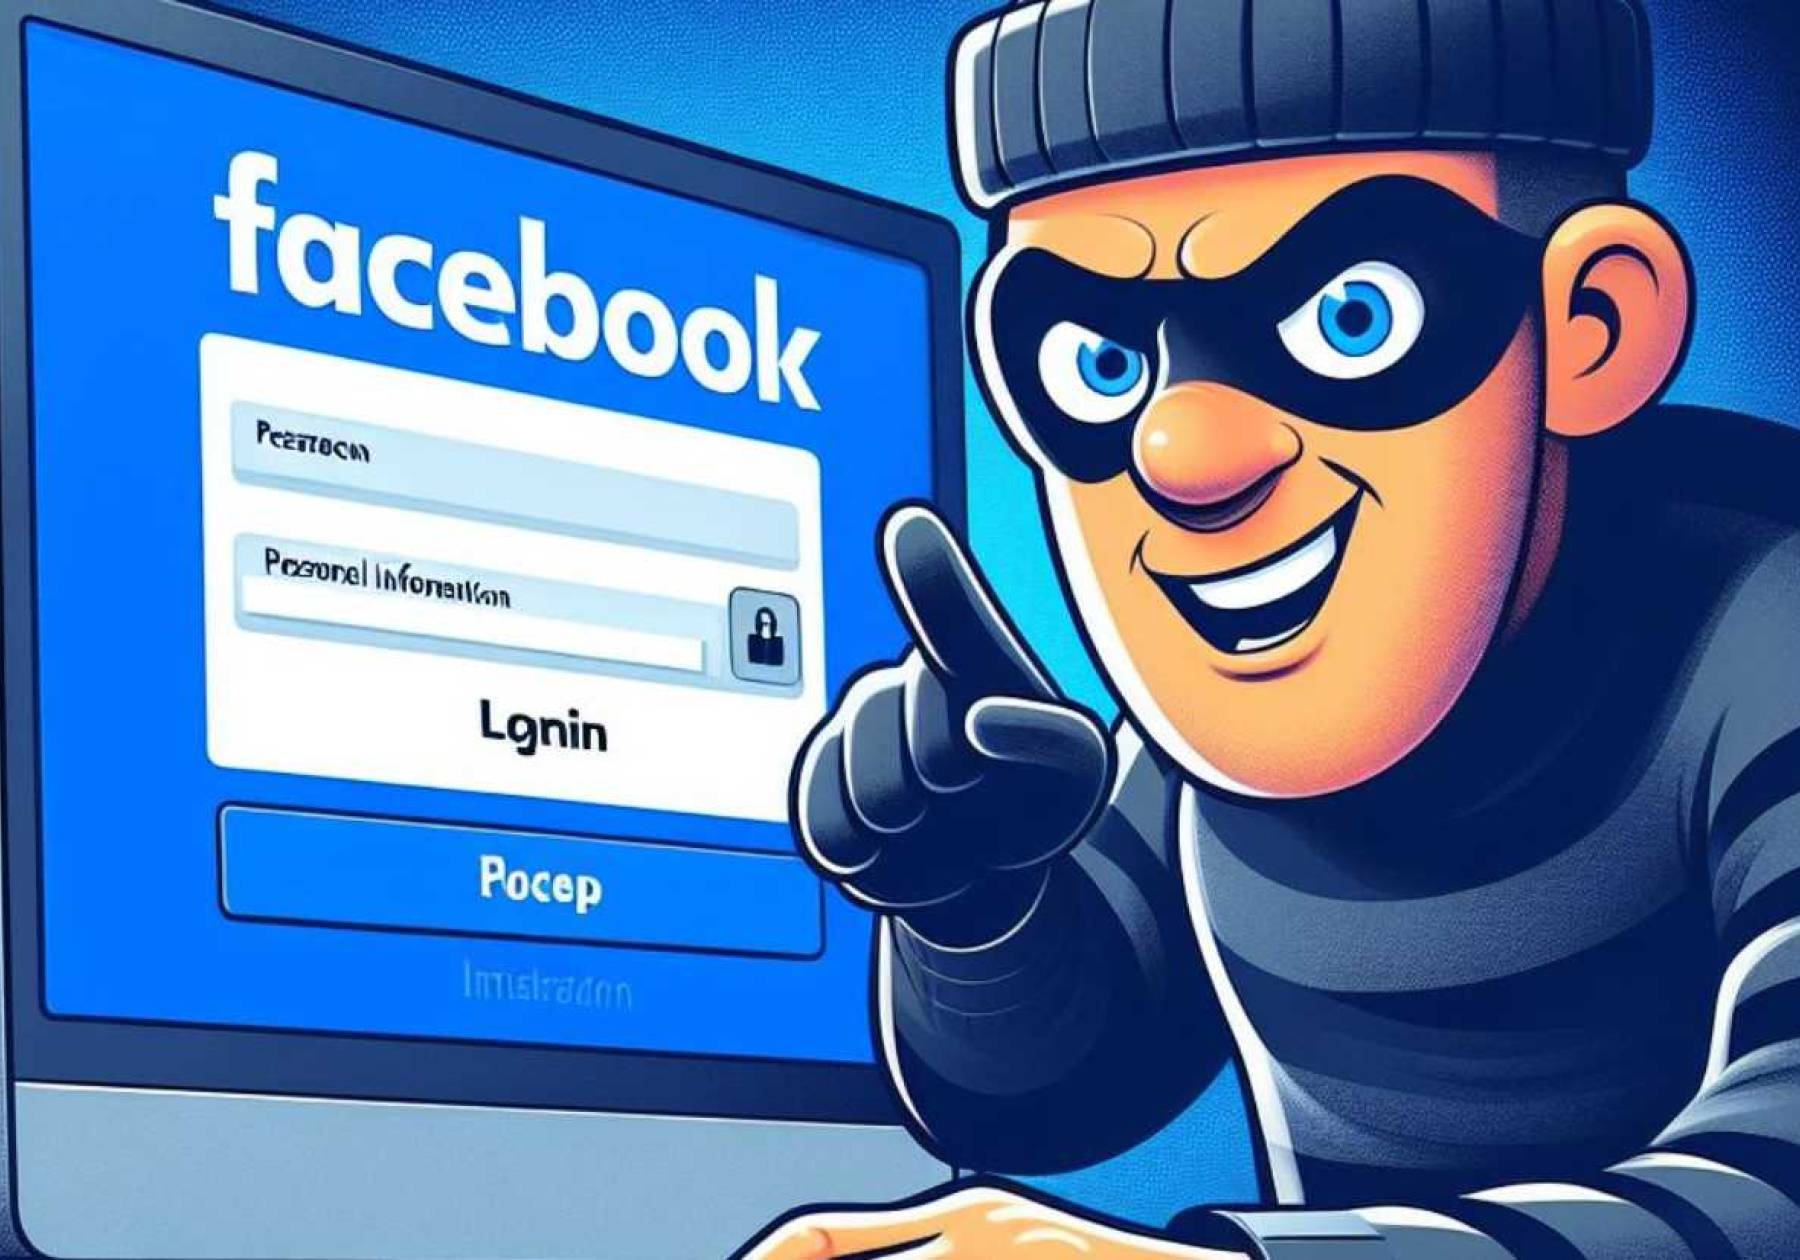 “Su página está programada para eliminación” - Los mensajes falsos que se han incrementado en las últimas semanas en Facebook.